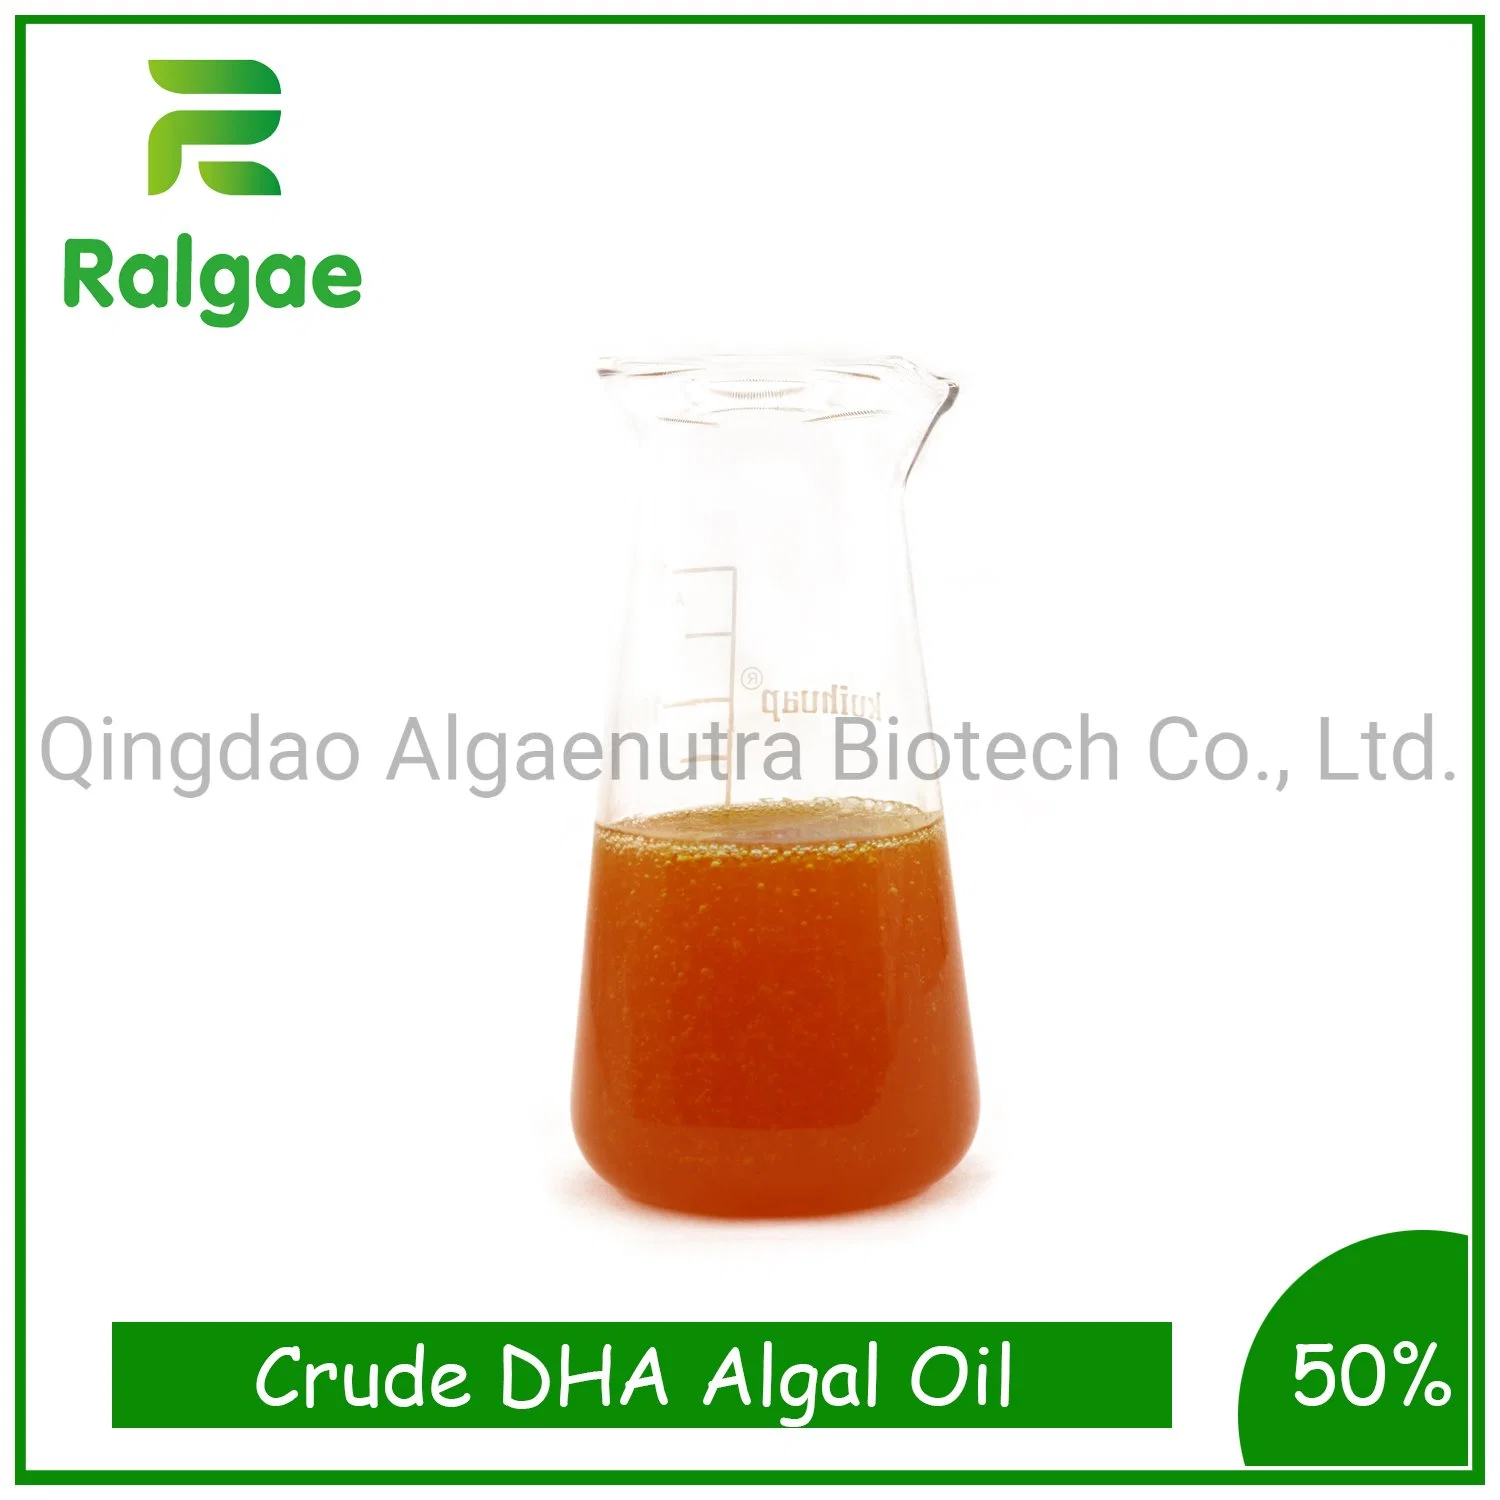 أوميغا 3 طحالب /الطحالب الخام من النفط الخام من هيئة الصحة بدبي (DHA) للحيوان المادة المضافة للتغذية CAS6217-54-5